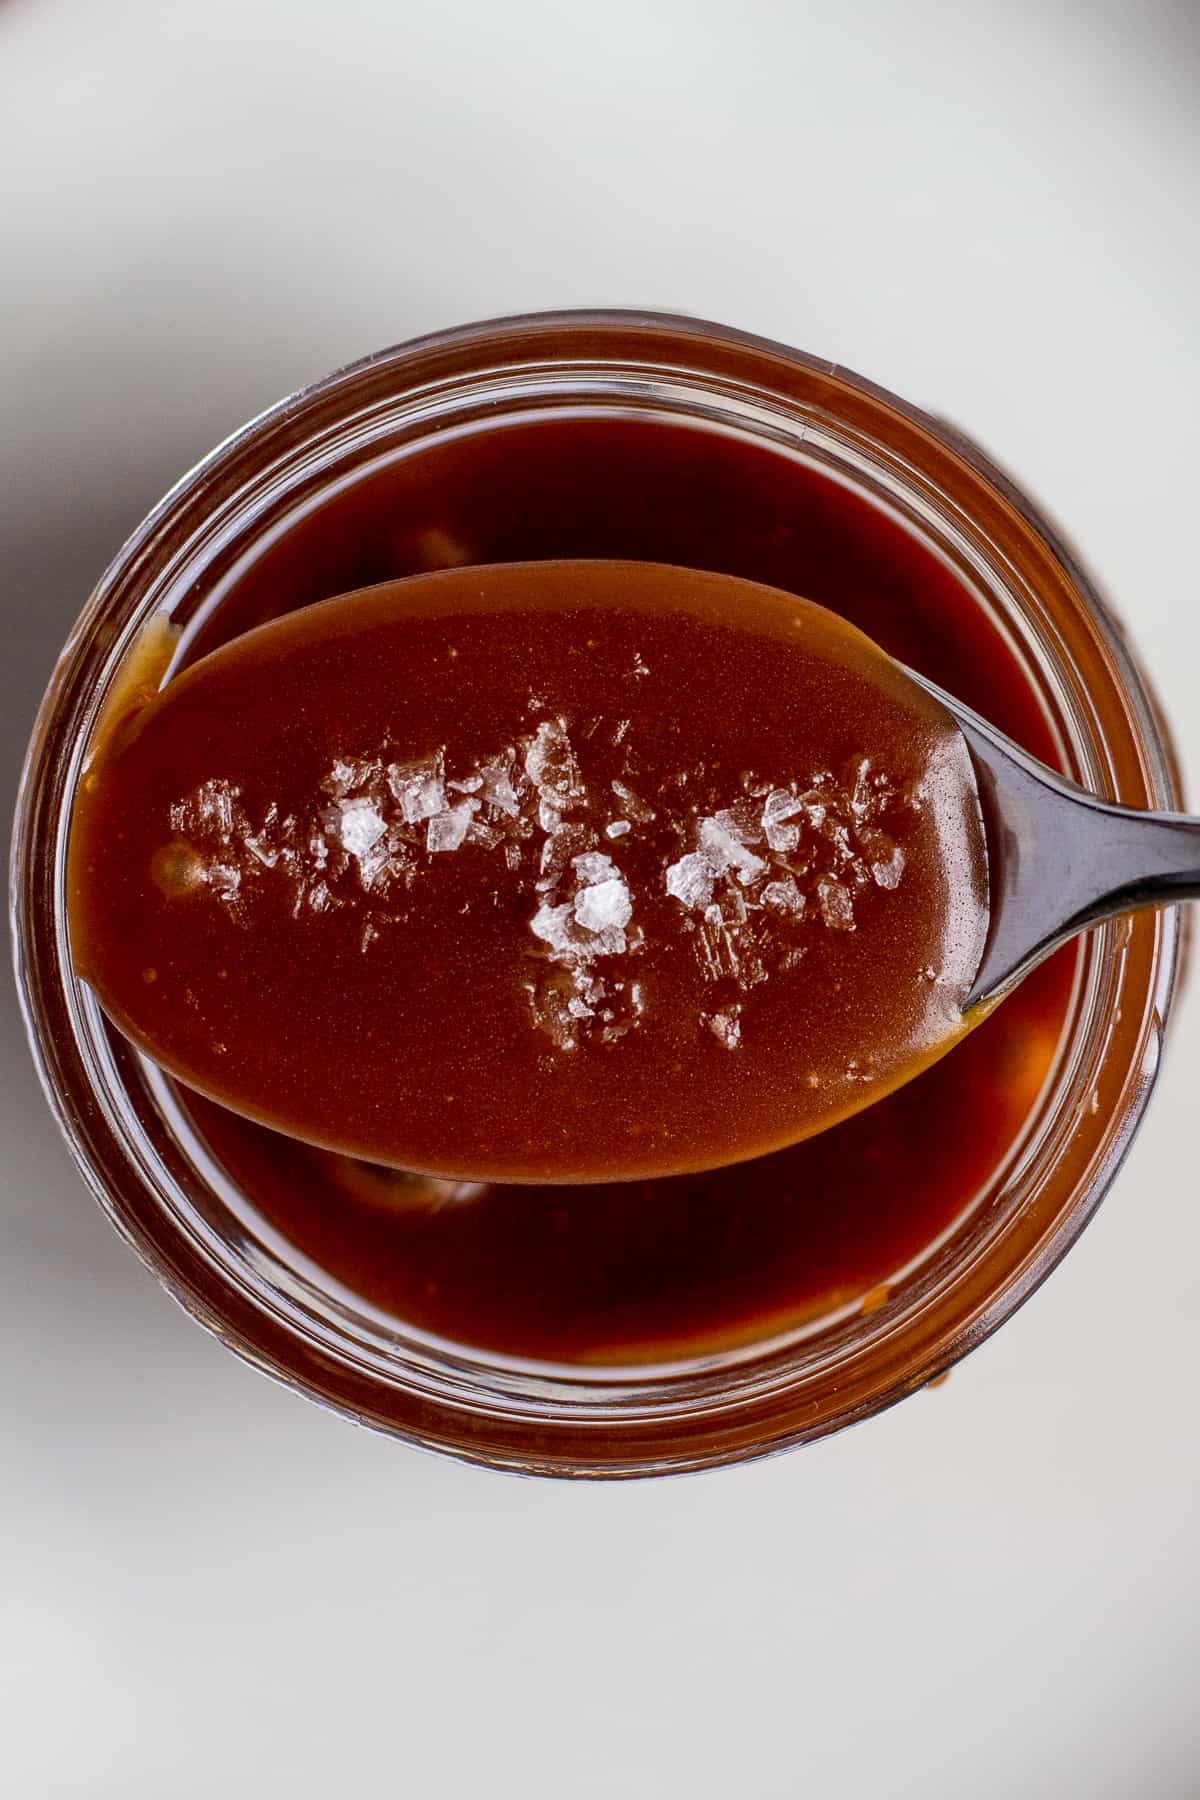 salted caramel on a spoon with flaky salt